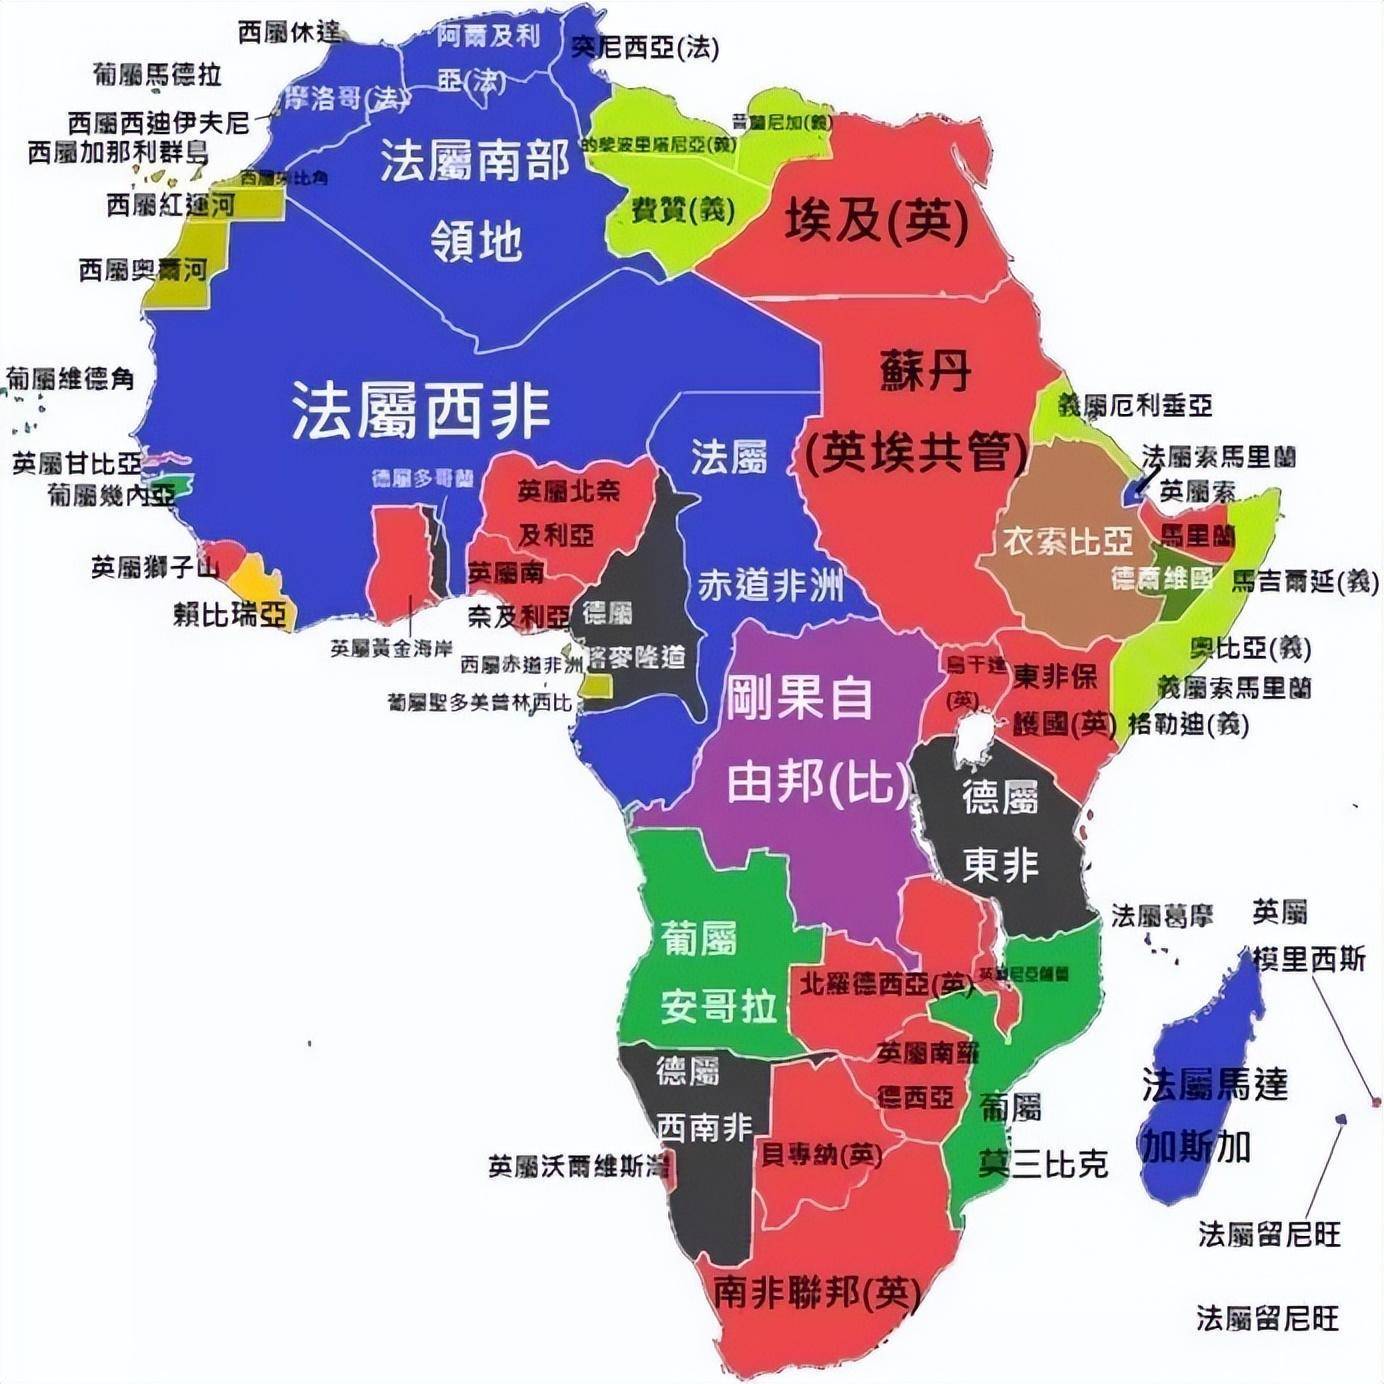 在非洲,法语是最主流的交流语言之一,至今很多